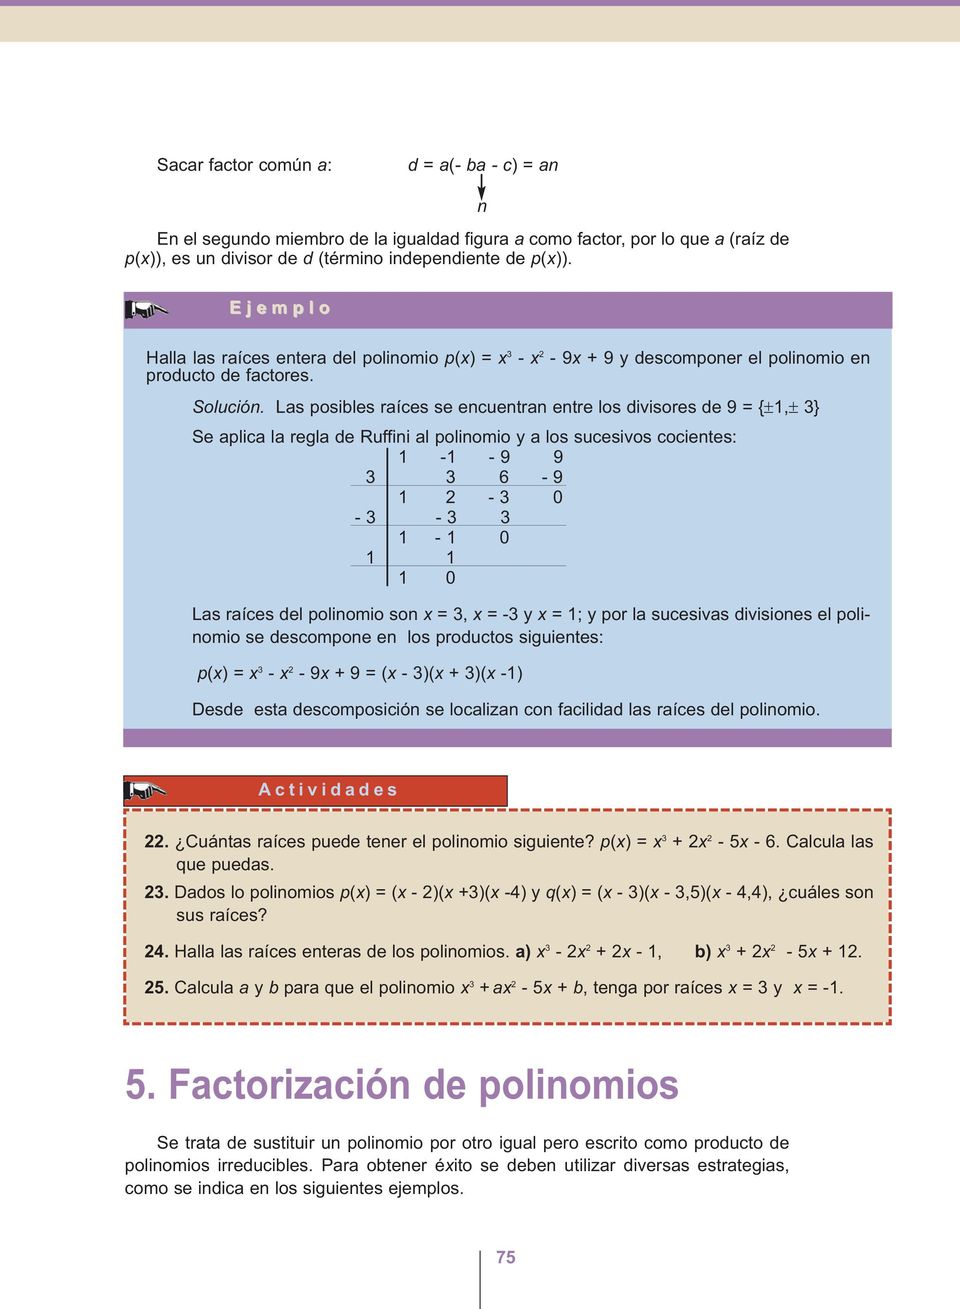 Las posibles raíces se encuentran entre los divisores de 9 {±1,± } Se aplica la regla de Ruffini al polinomio y a los sucesivos cocientes: 1-1 - 9 9 6-9 1-0 - - 1-1 0 1 1 1 0 Las raíces del polinomio